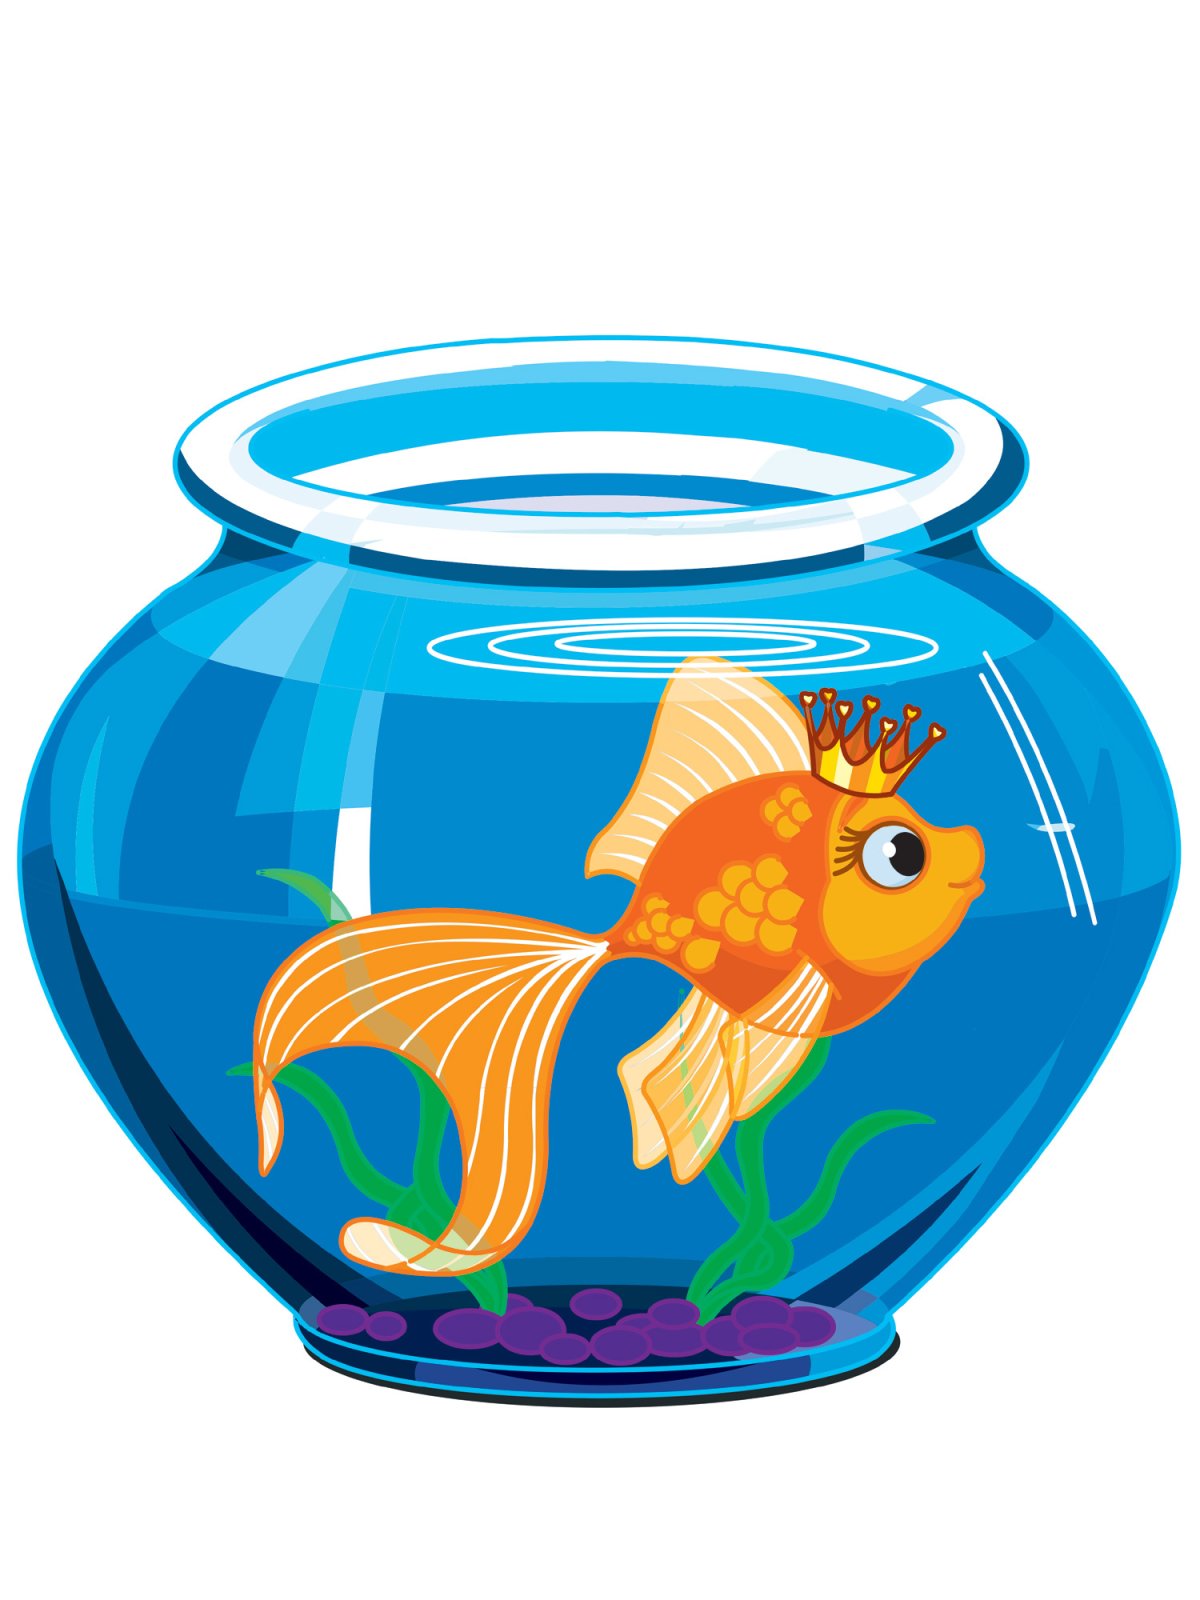 Золотая рыбка в аквариуме для детей